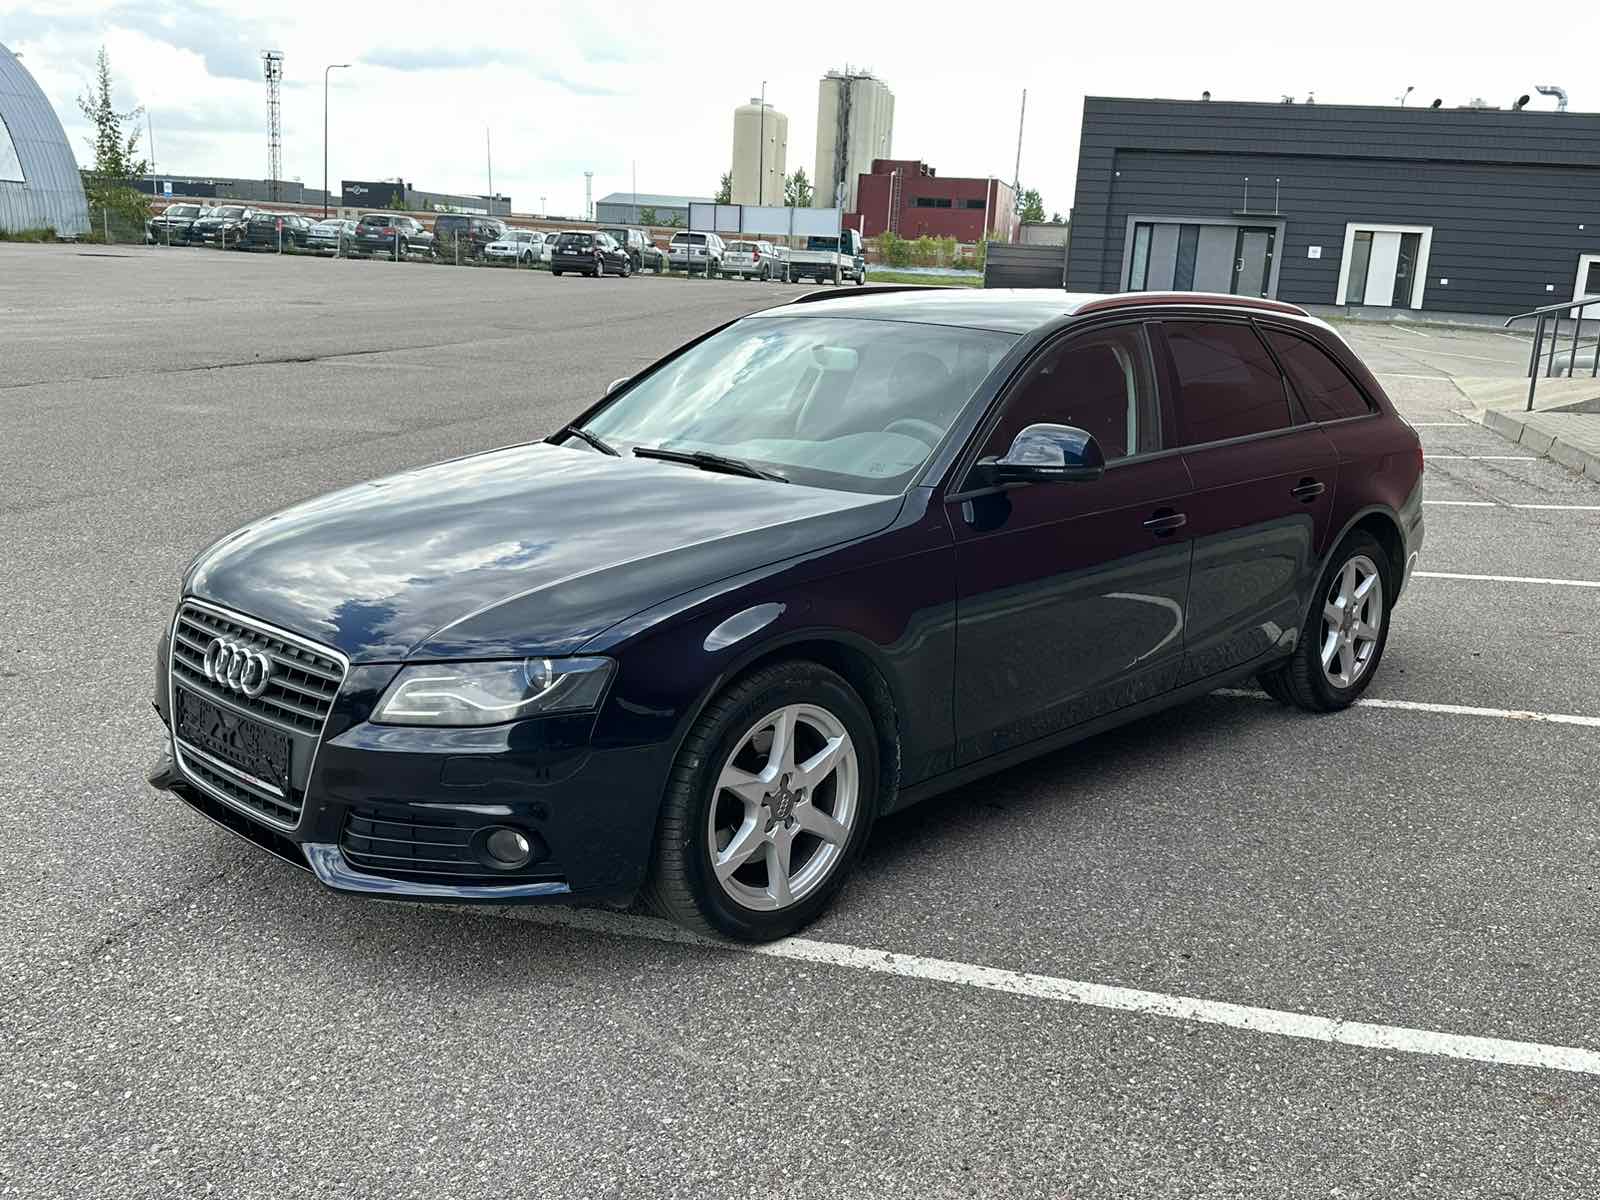 Audi A4 2.0l., universalas